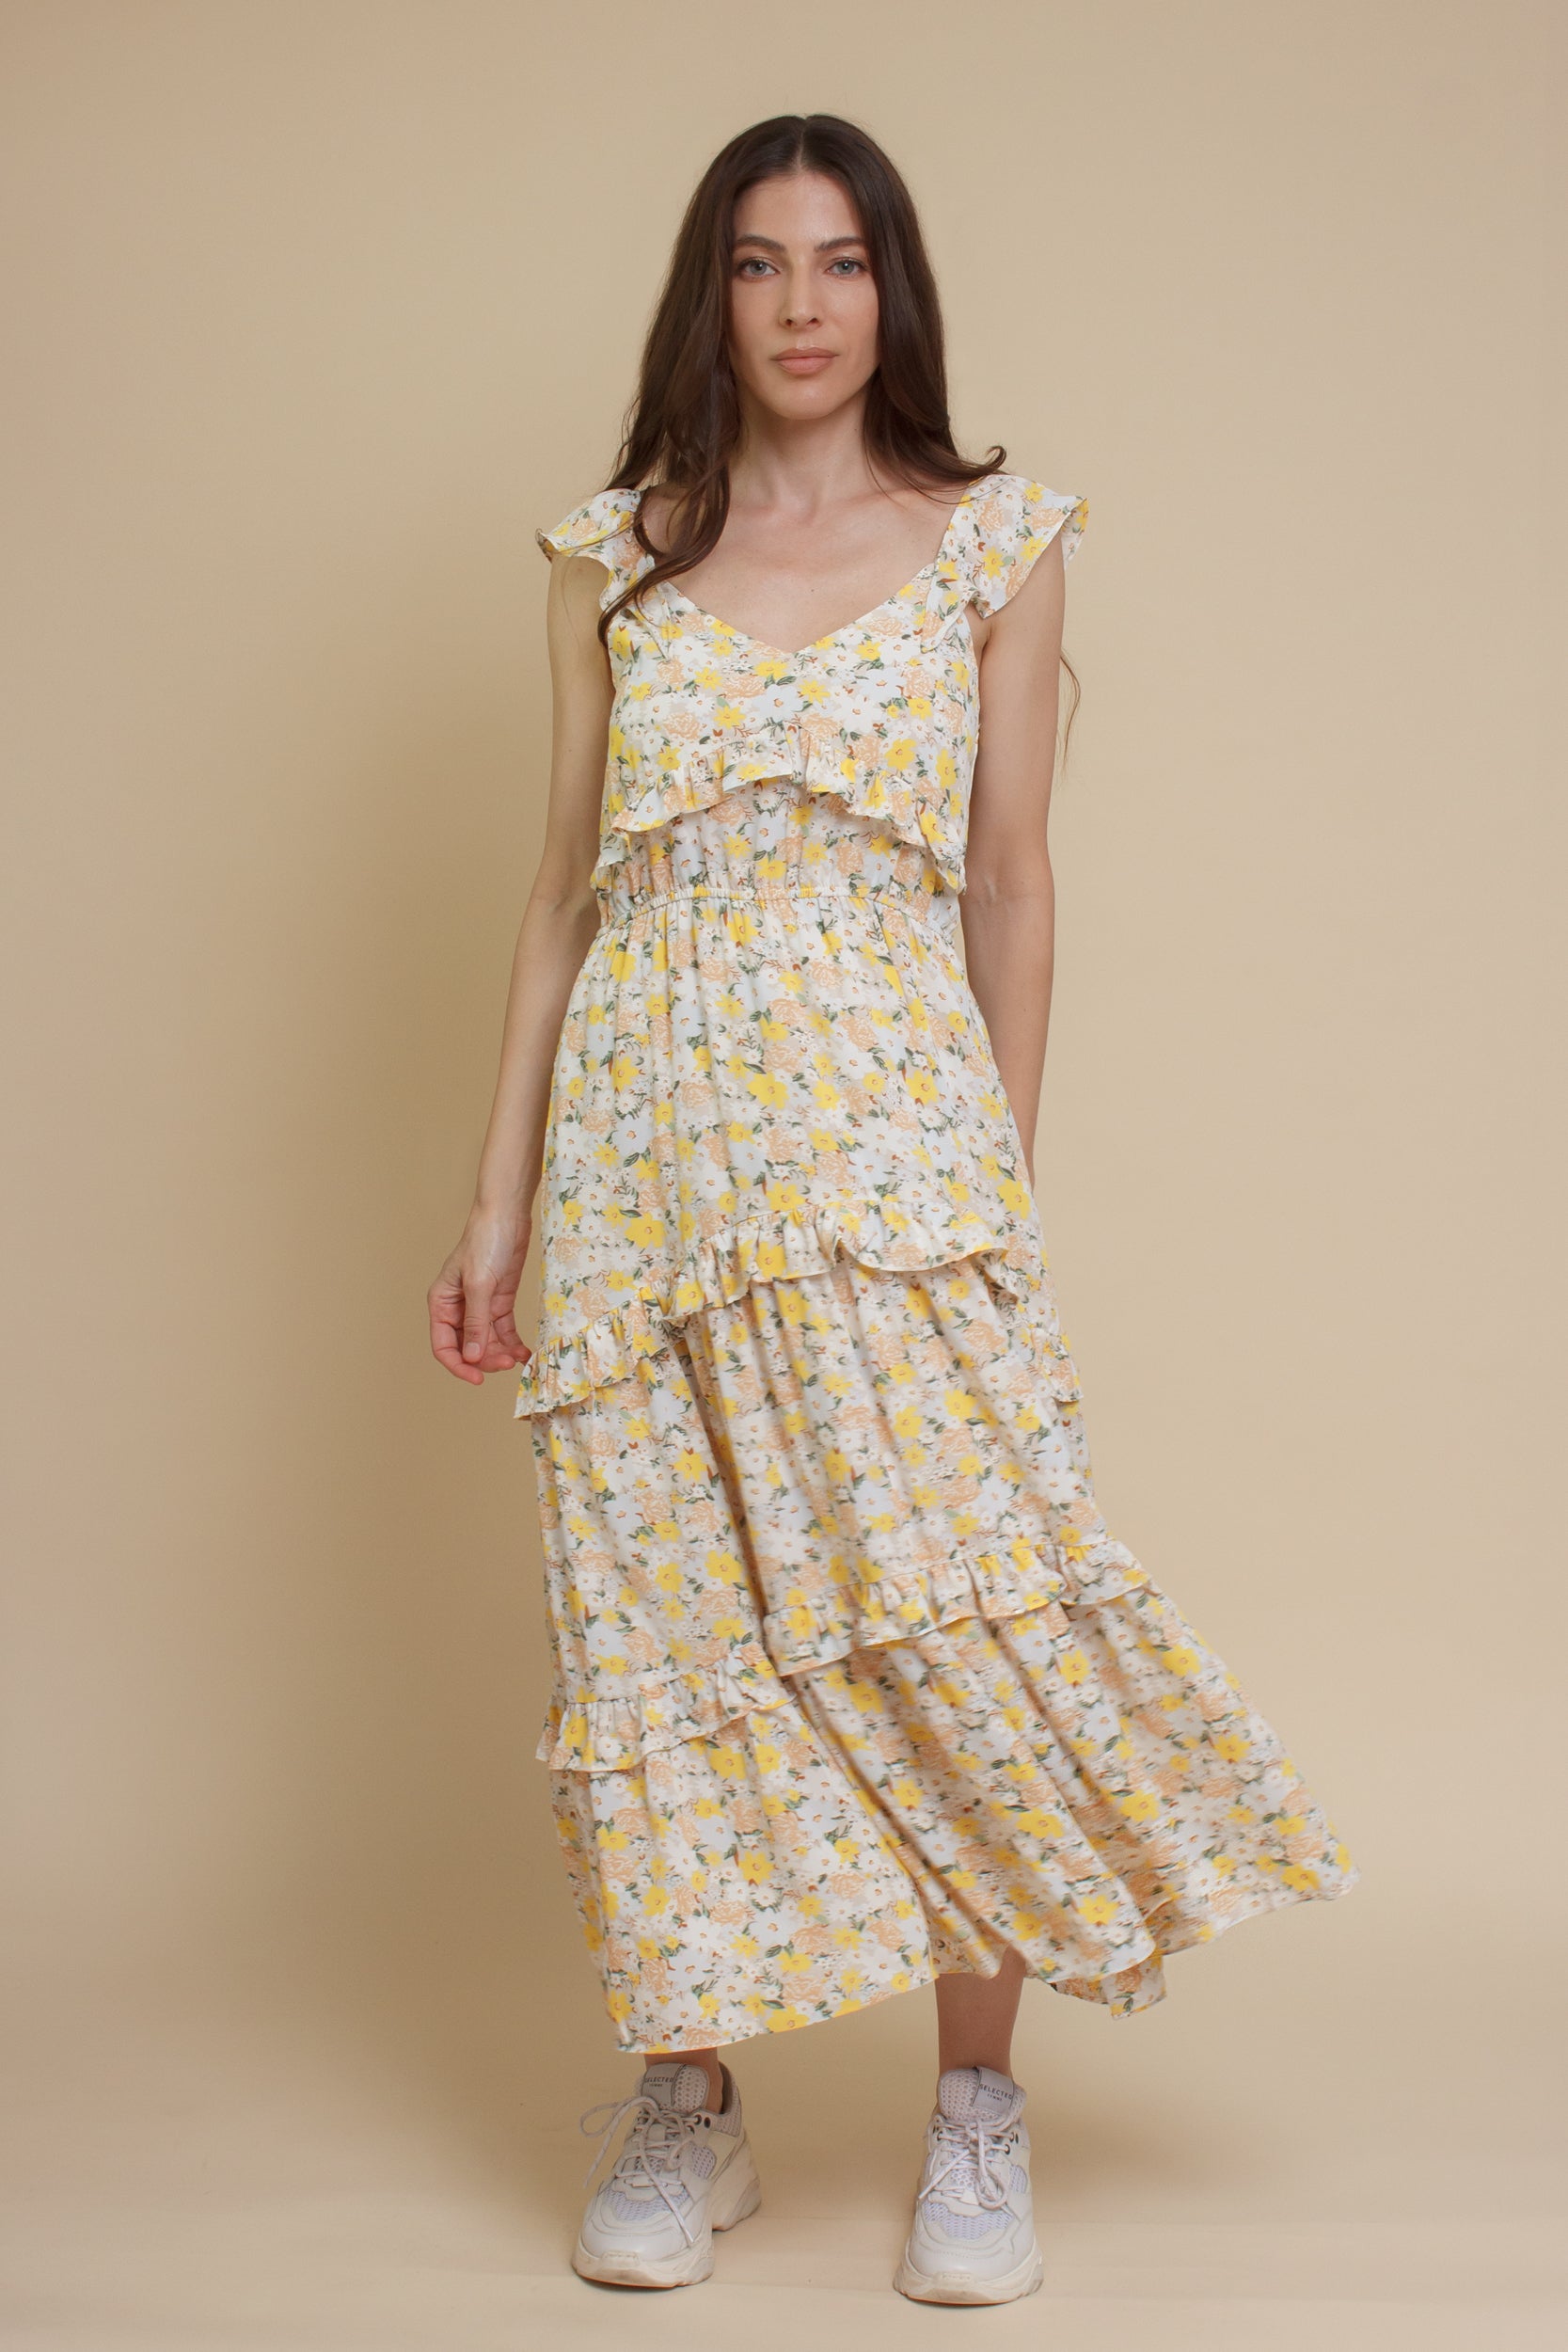 Calista floral midi dress, in cream/yellow.